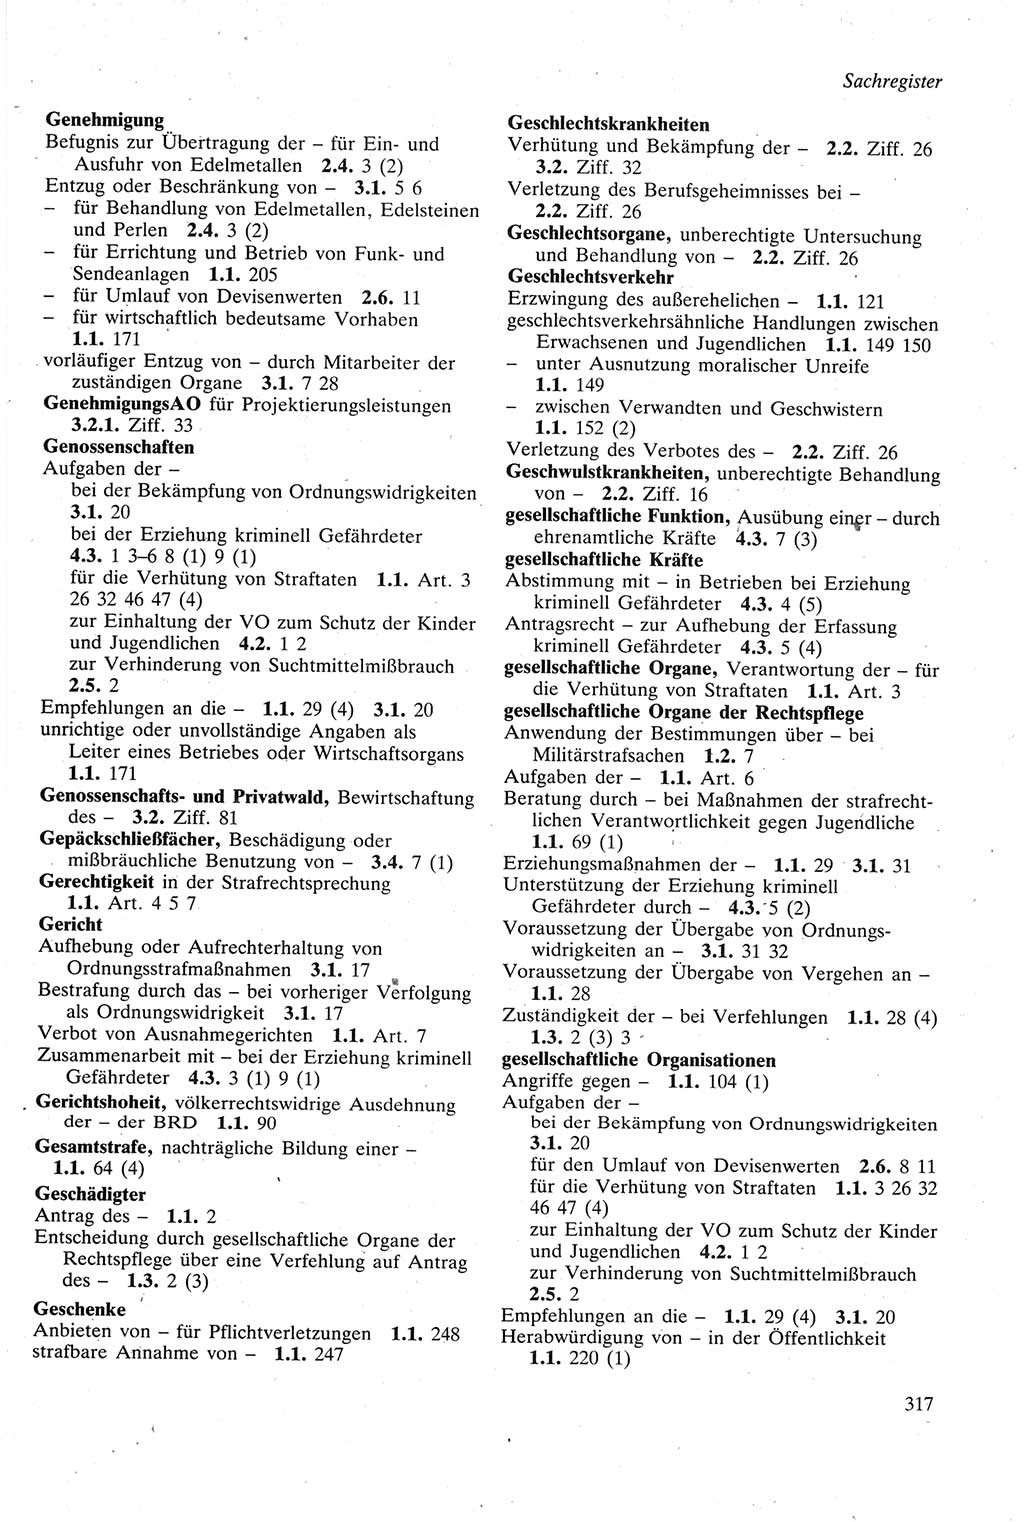 Strafgesetzbuch (StGB) der Deutschen Demokratischen Republik (DDR) sowie angrenzende Gesetze und Bestimmungen 1979, Seite 317 (StGB DDR Ges. Best. 1979, S. 317)